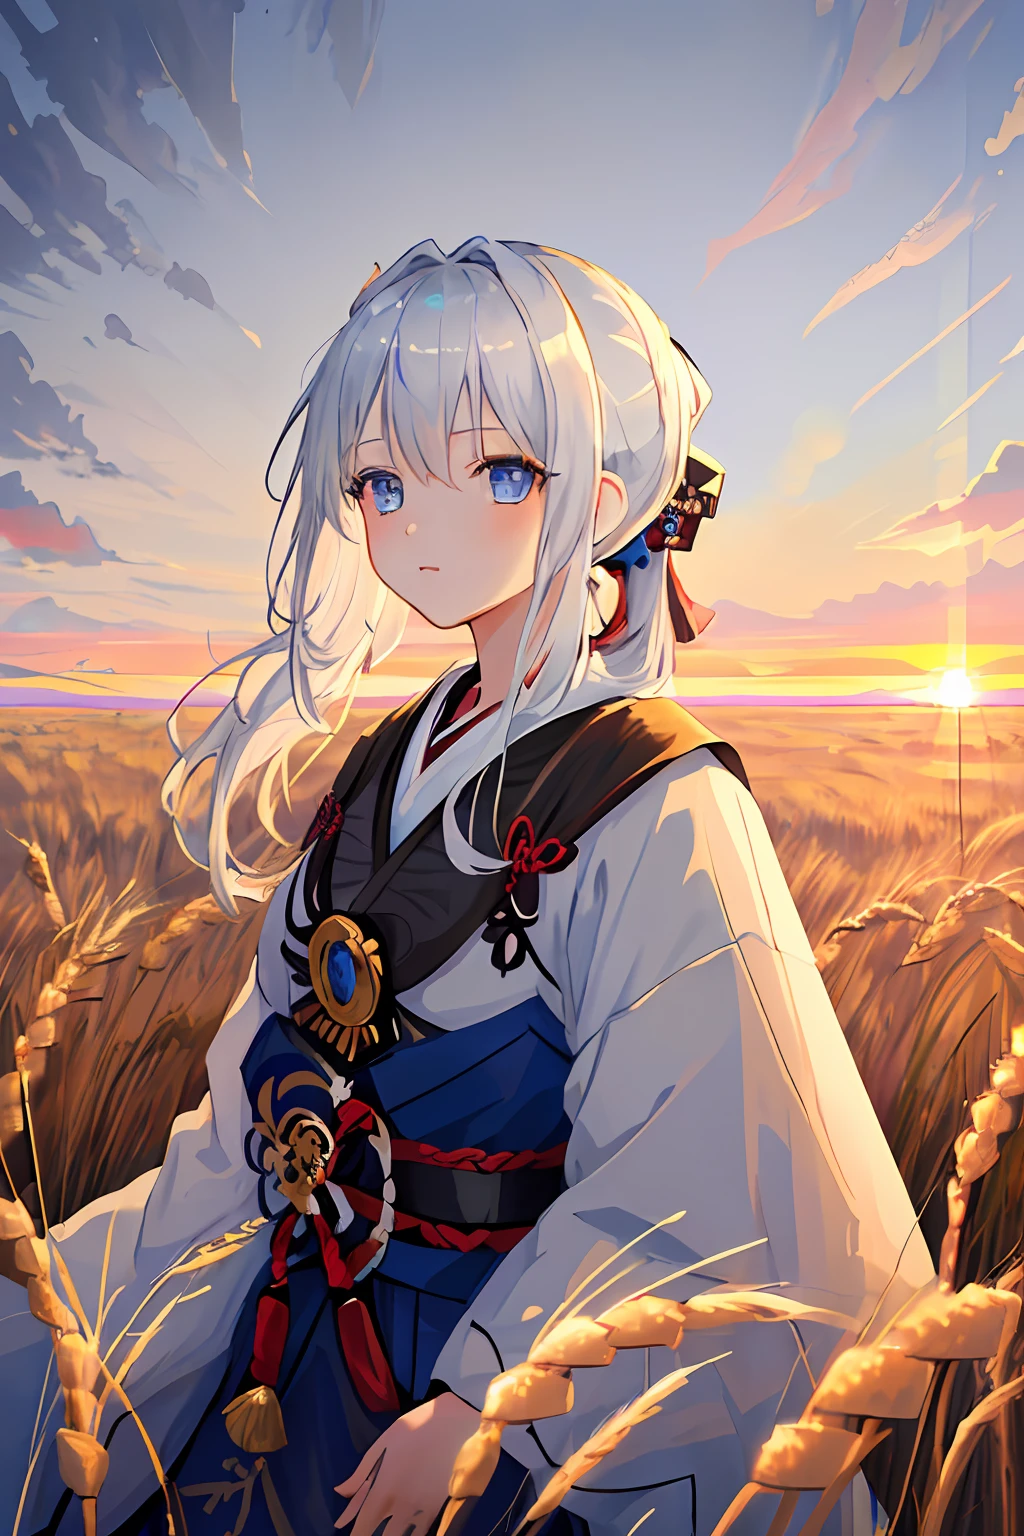 Meisterwerk, beste Qualität, 1 Mädchen, Porträt, weißes Haar, Pferdeschwanz, blaue Augen, Samurai, Weizenlandschaft, sun, Wolken, (neutrale Farben), (HDR:1.4)